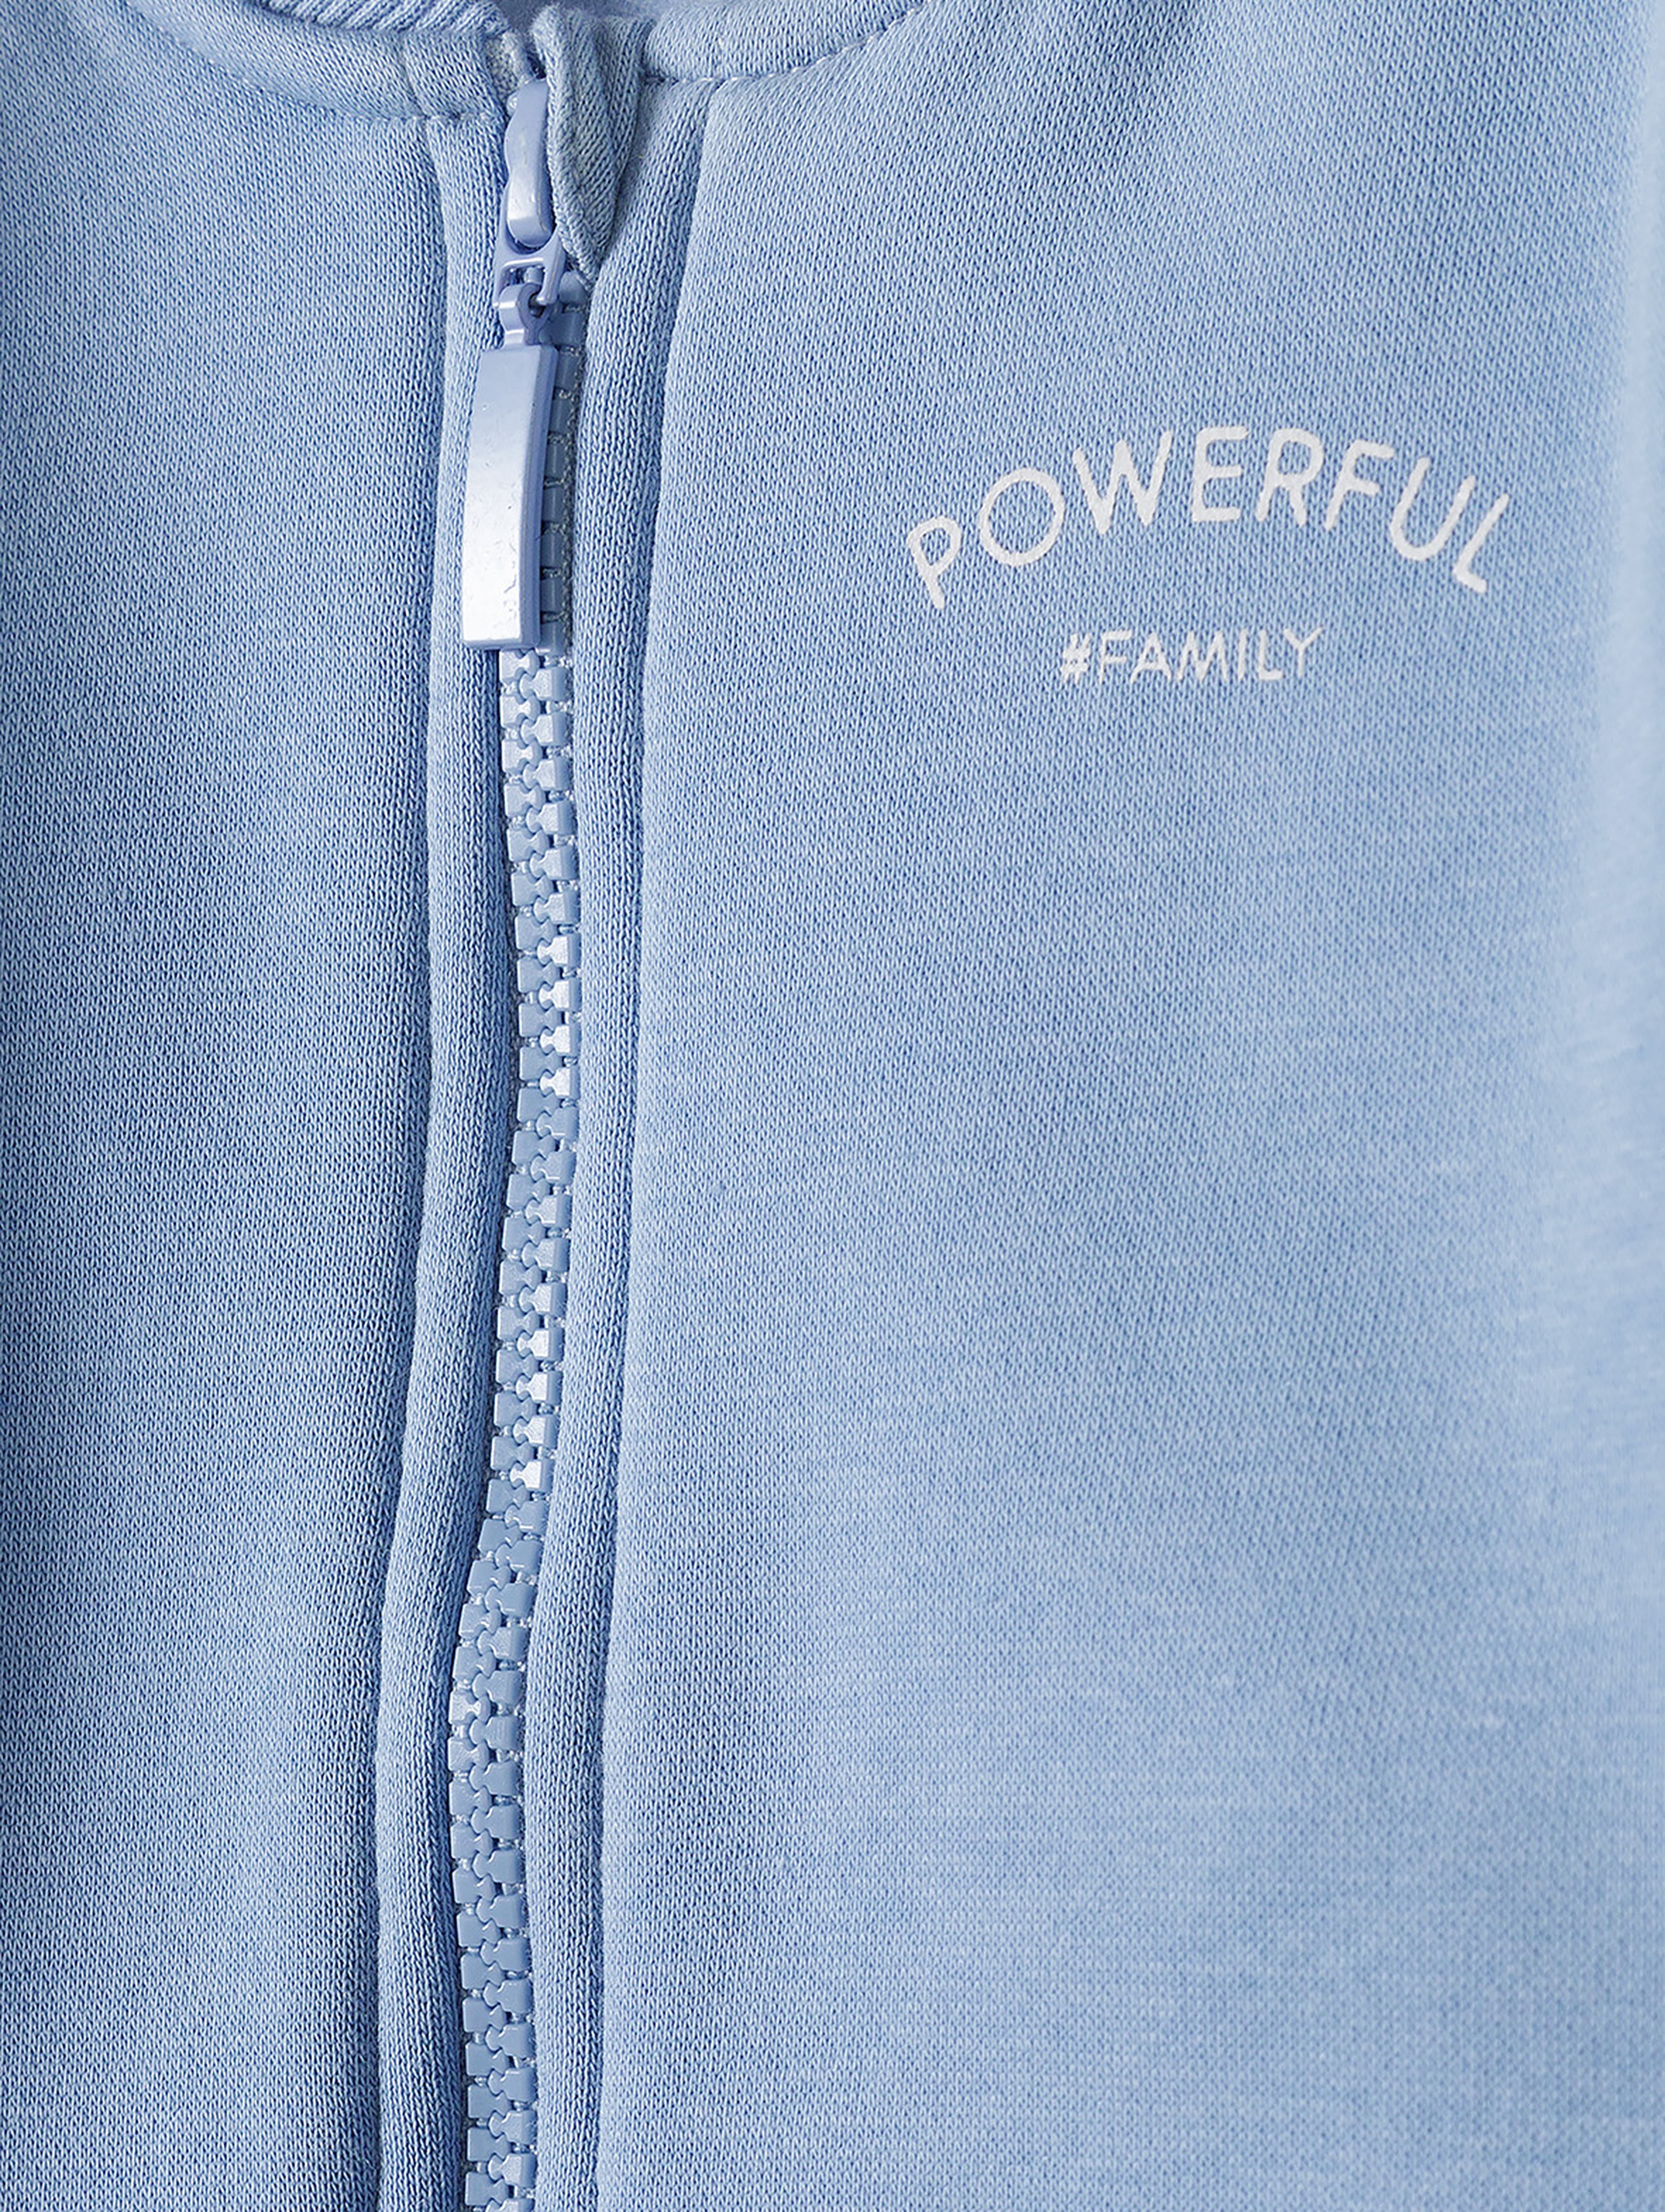 Bluza niemowlęca rozpinana niebieska -  Powerful #Family